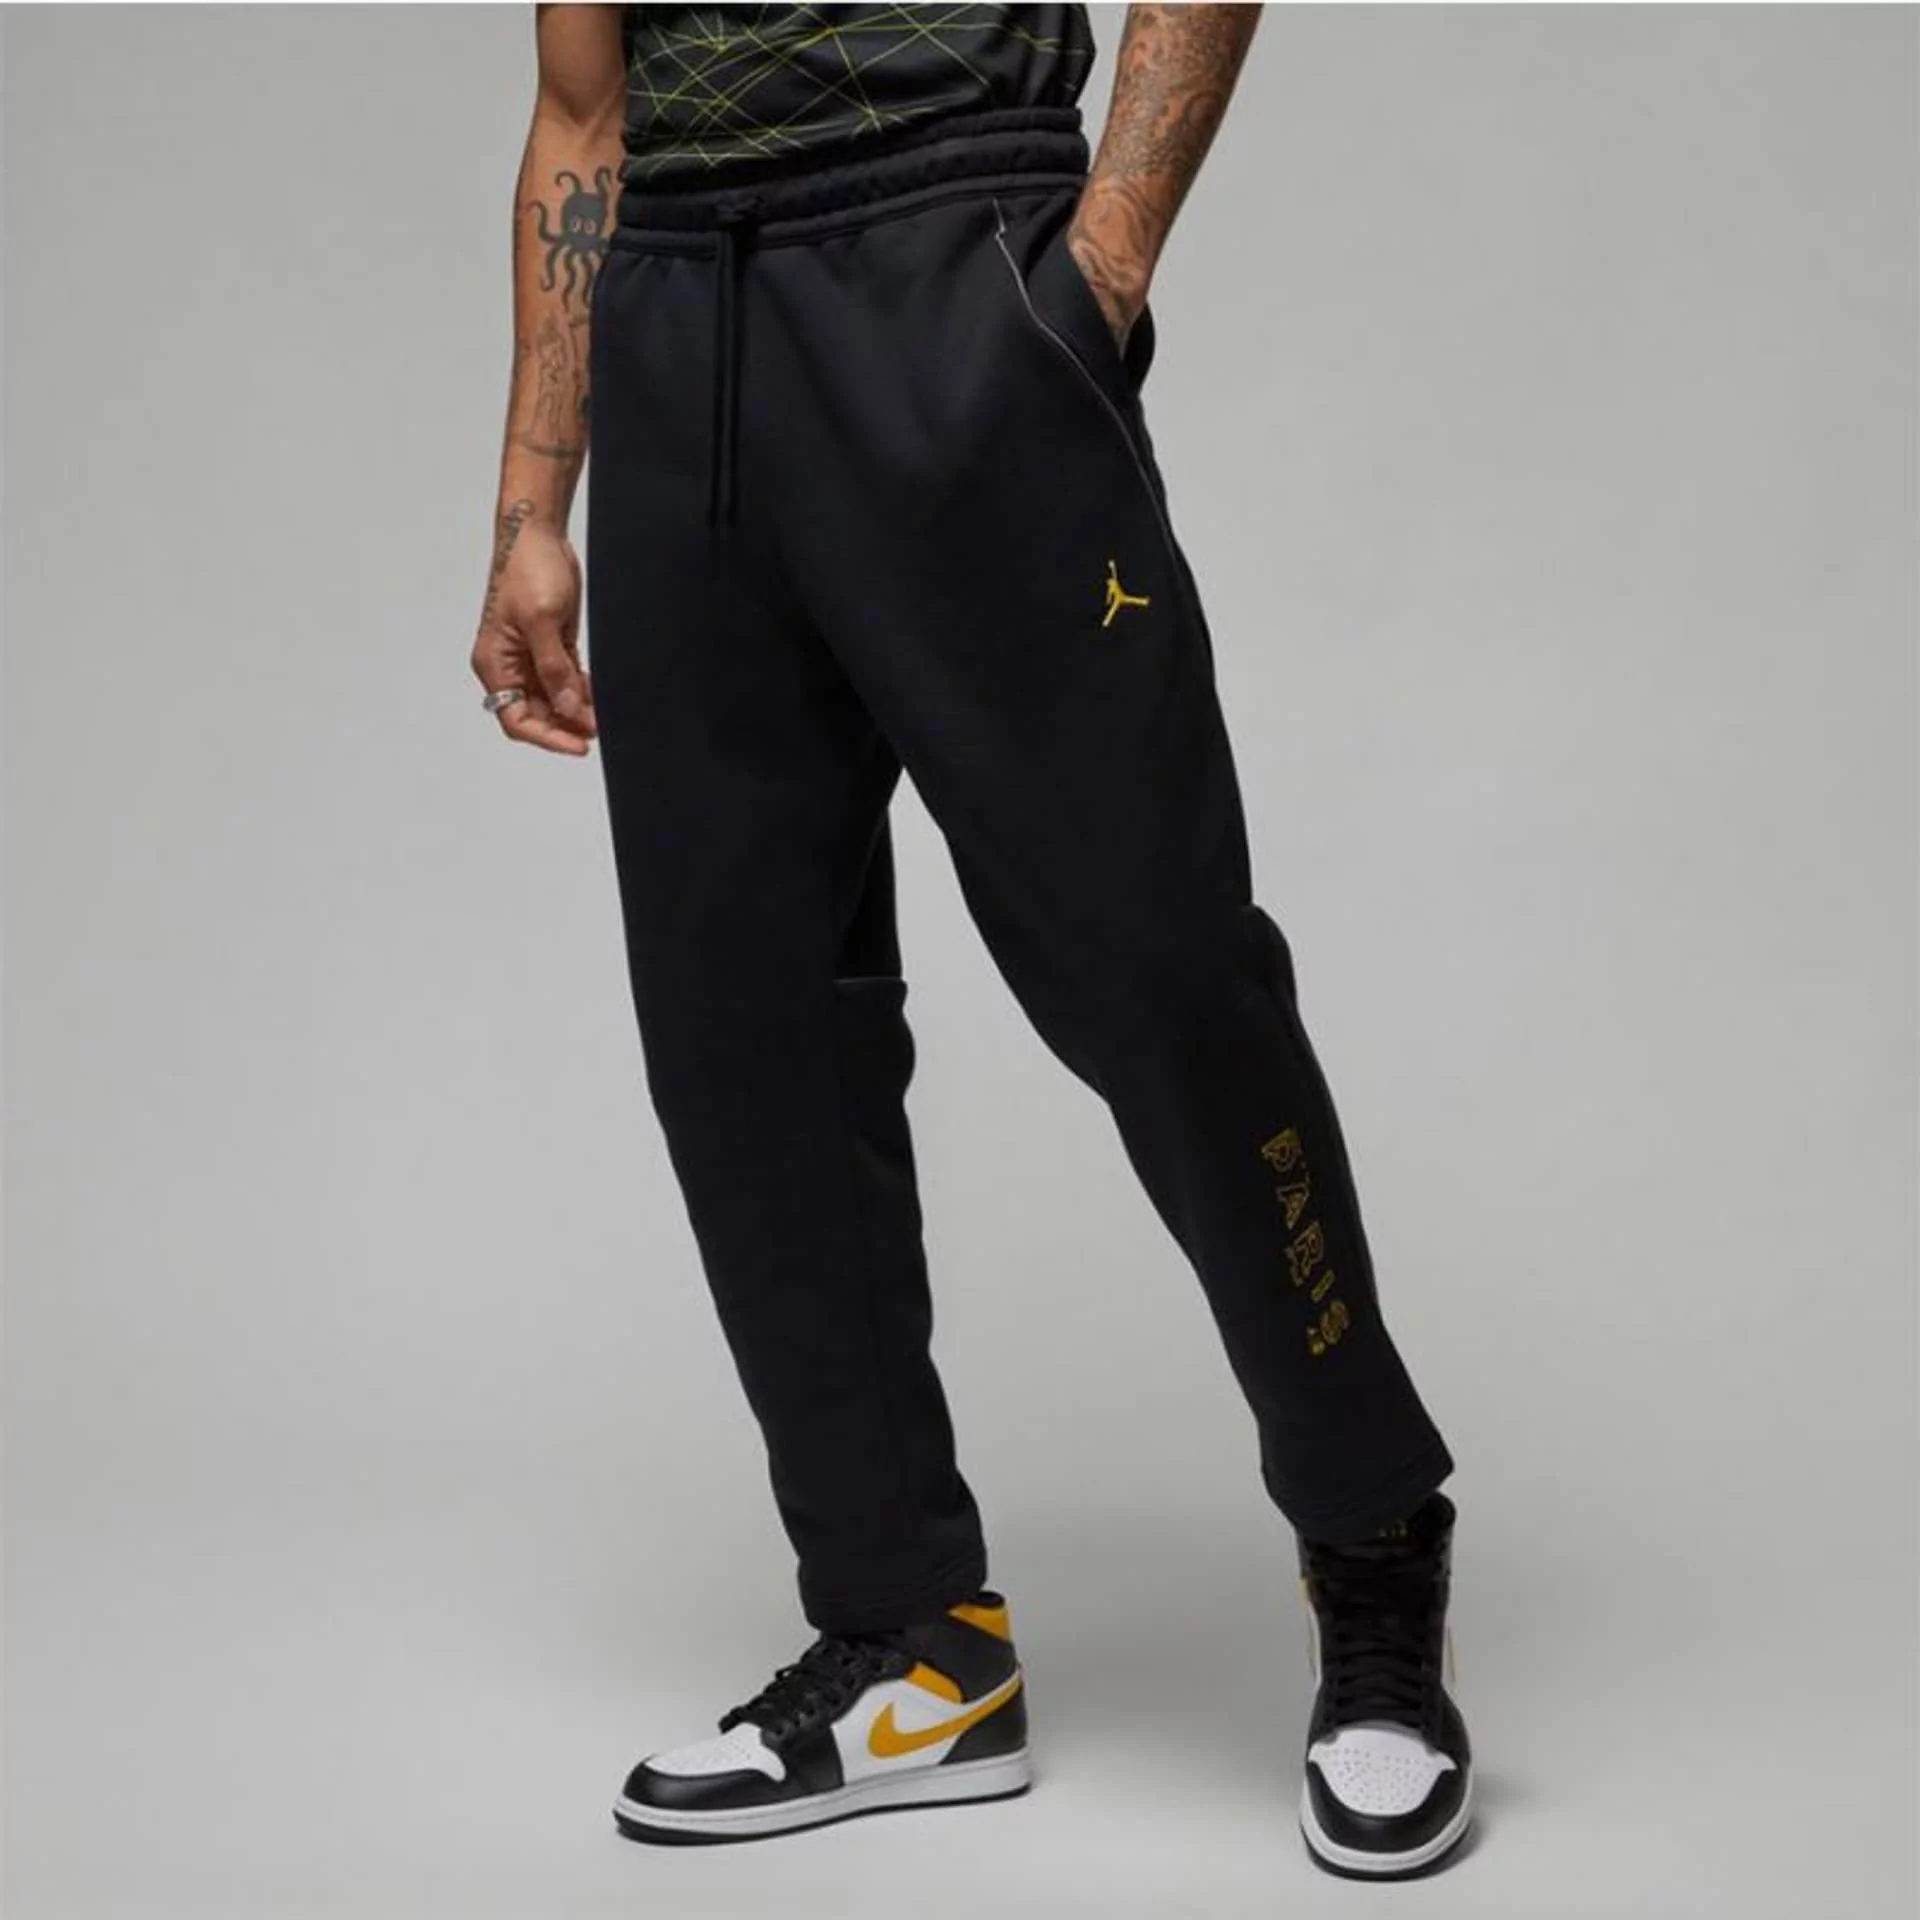 Spodnie Nike PSG Jordan M DV0621 (kolor Czarny, rozmiar S) - Ceny i opinie  na Skapiec.pl